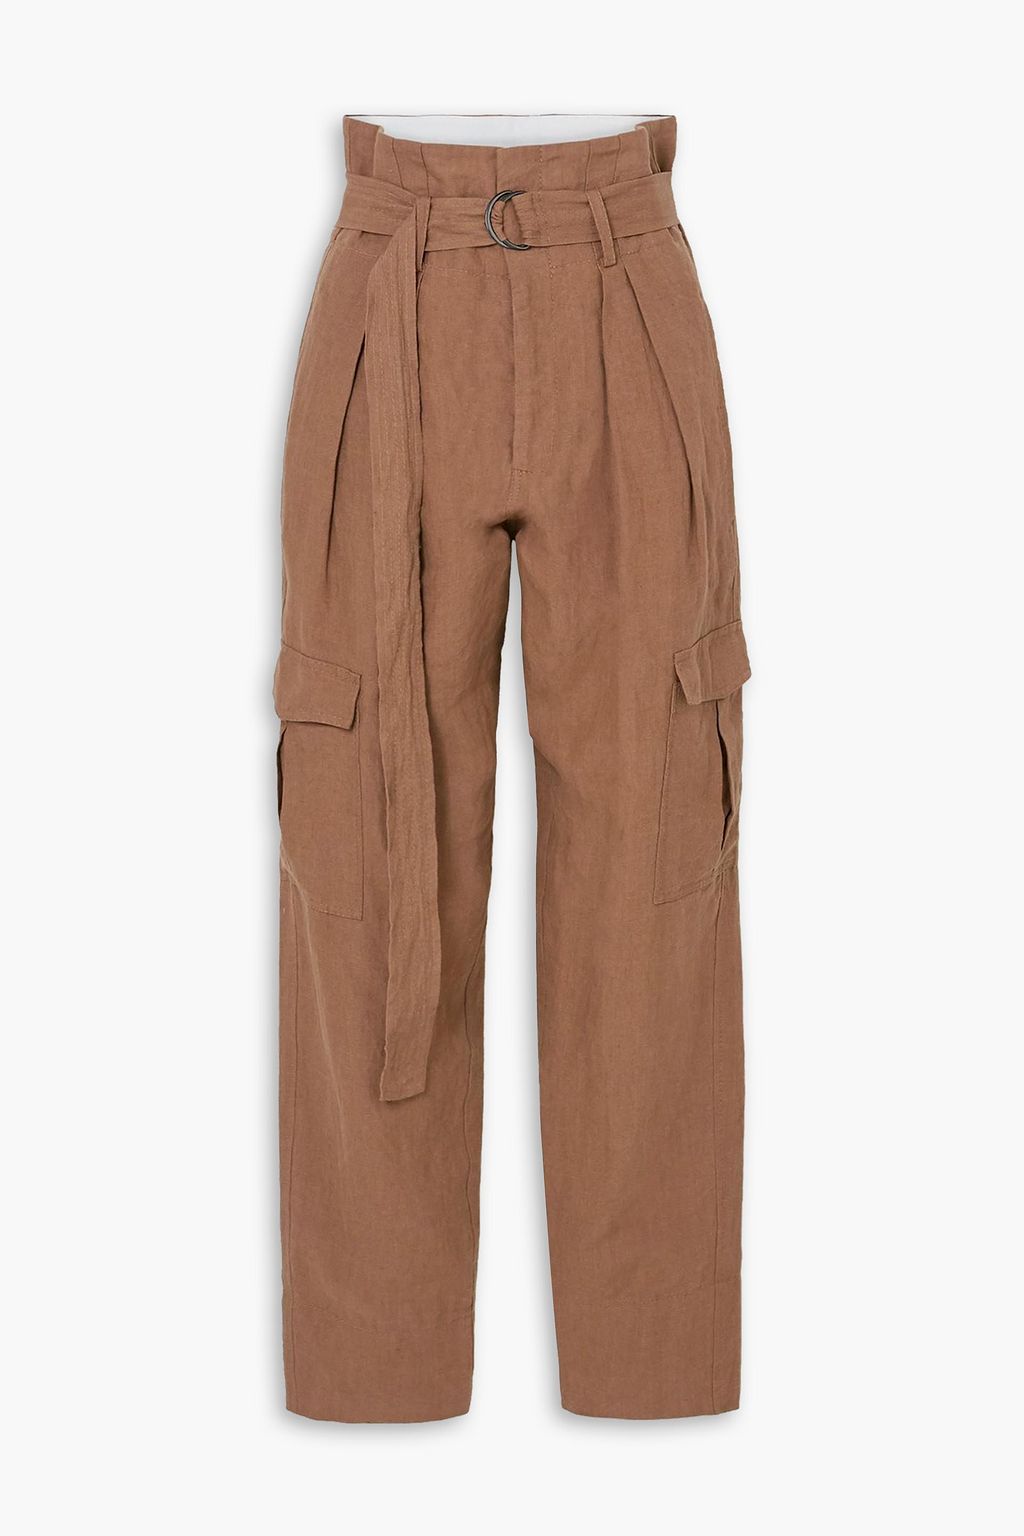 Льняные зауженные брюки с поясом Space For Giants BASSIKE, коричневый bassike блузка